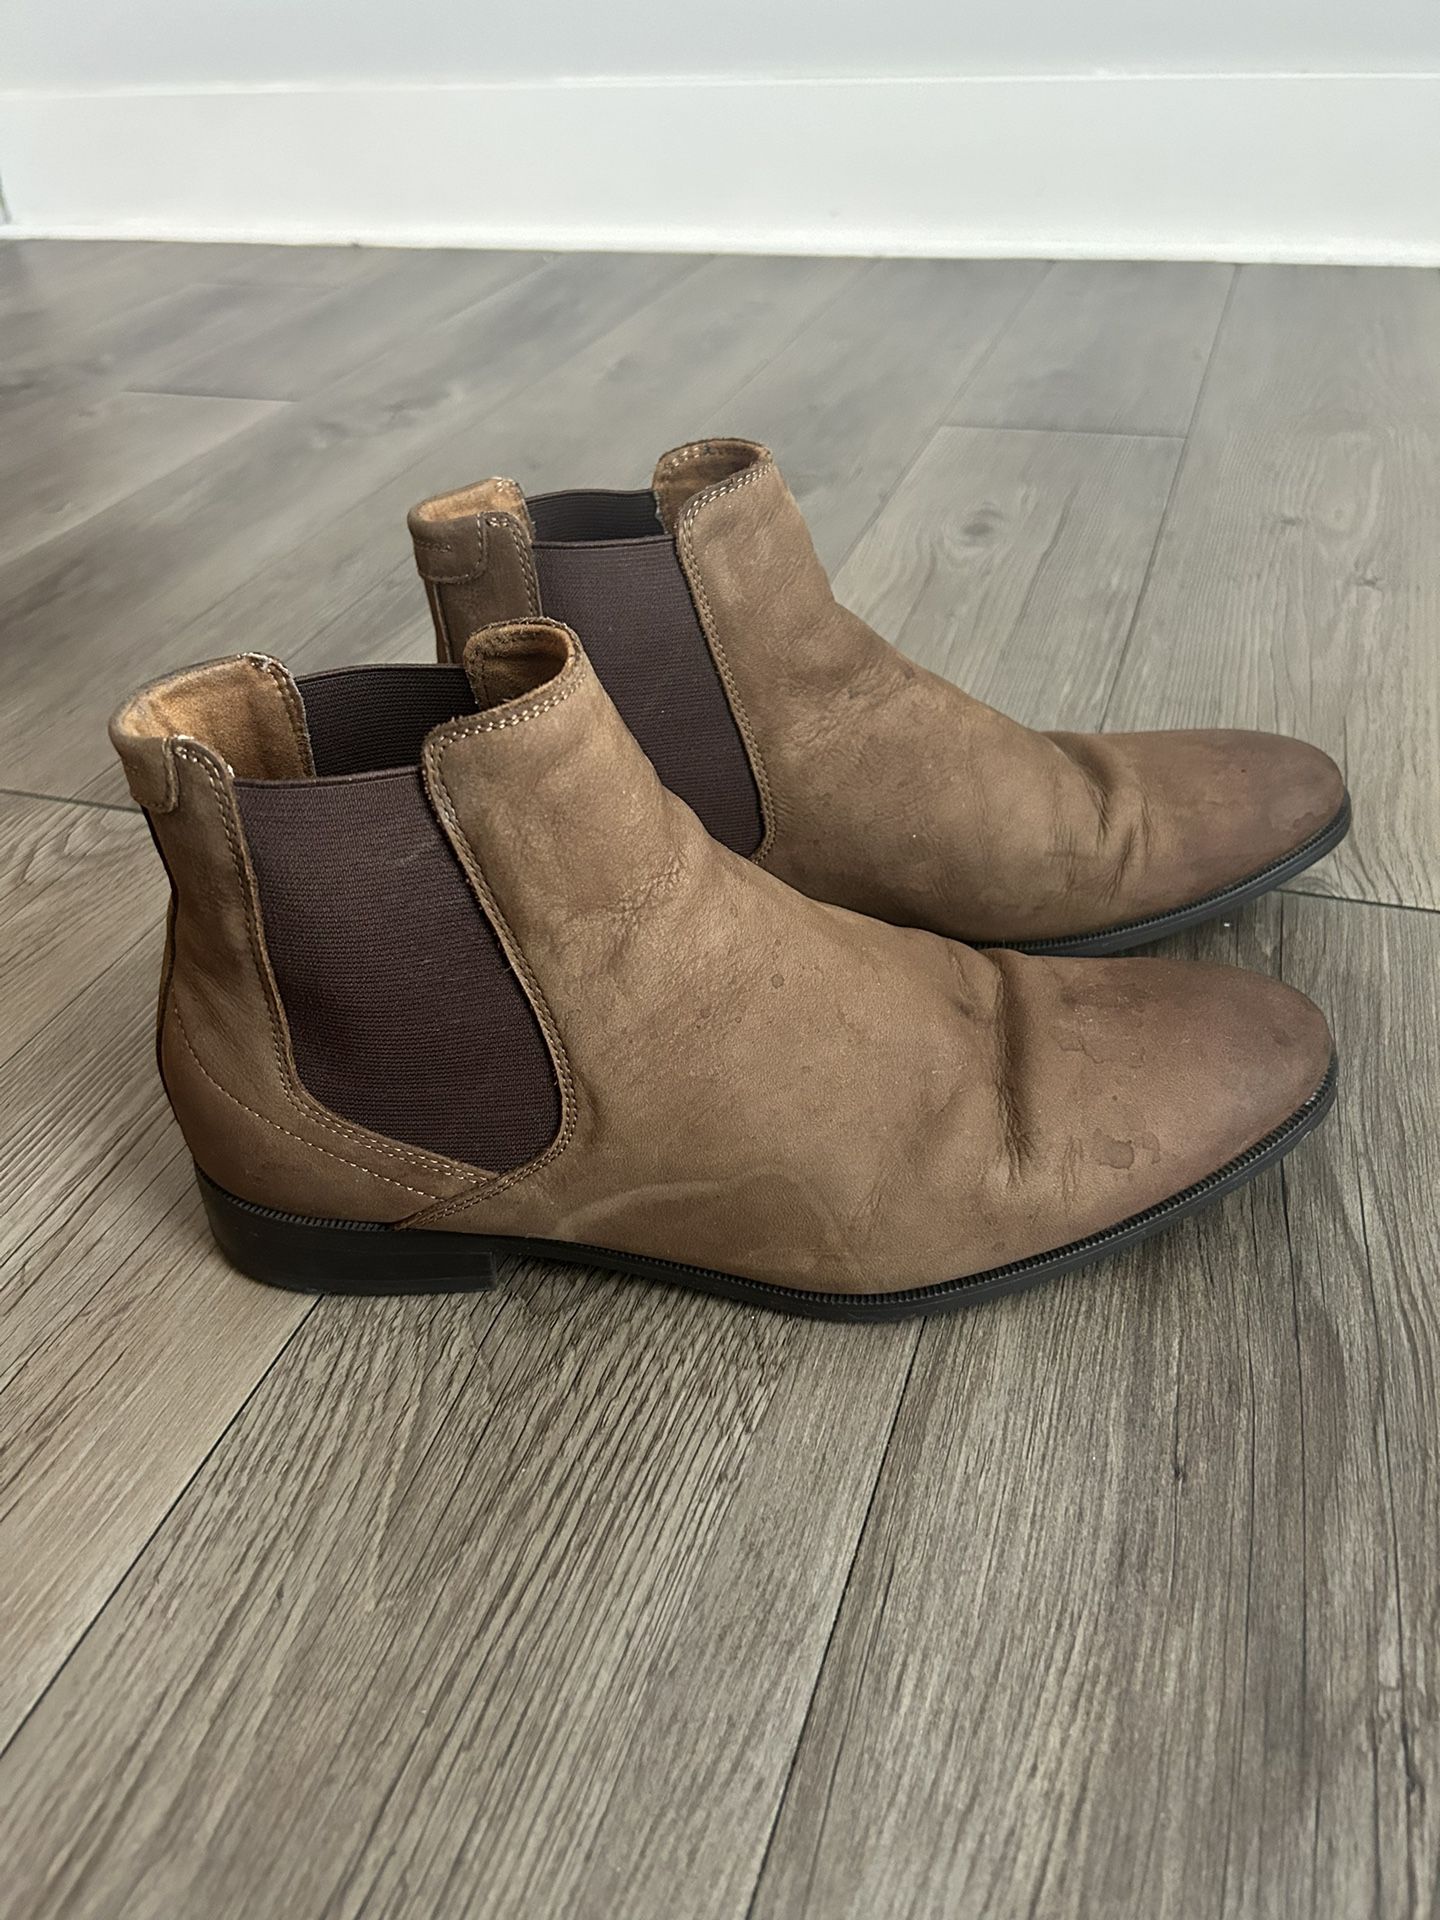 Aldo Boots Size 11